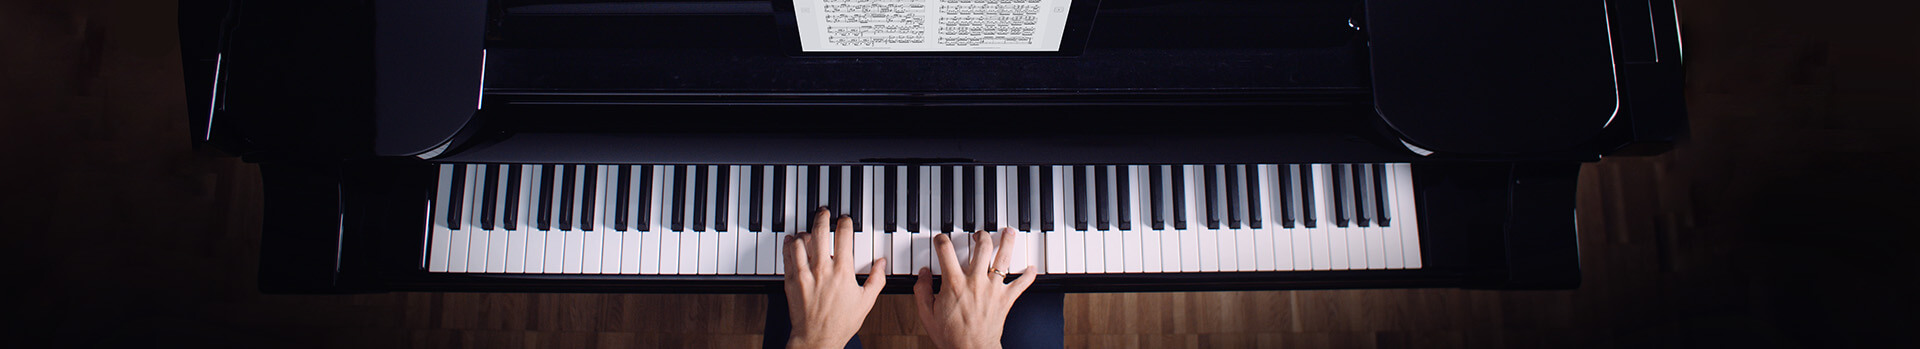 Où trouver des partitions de piano gratuites et libres de droit ?